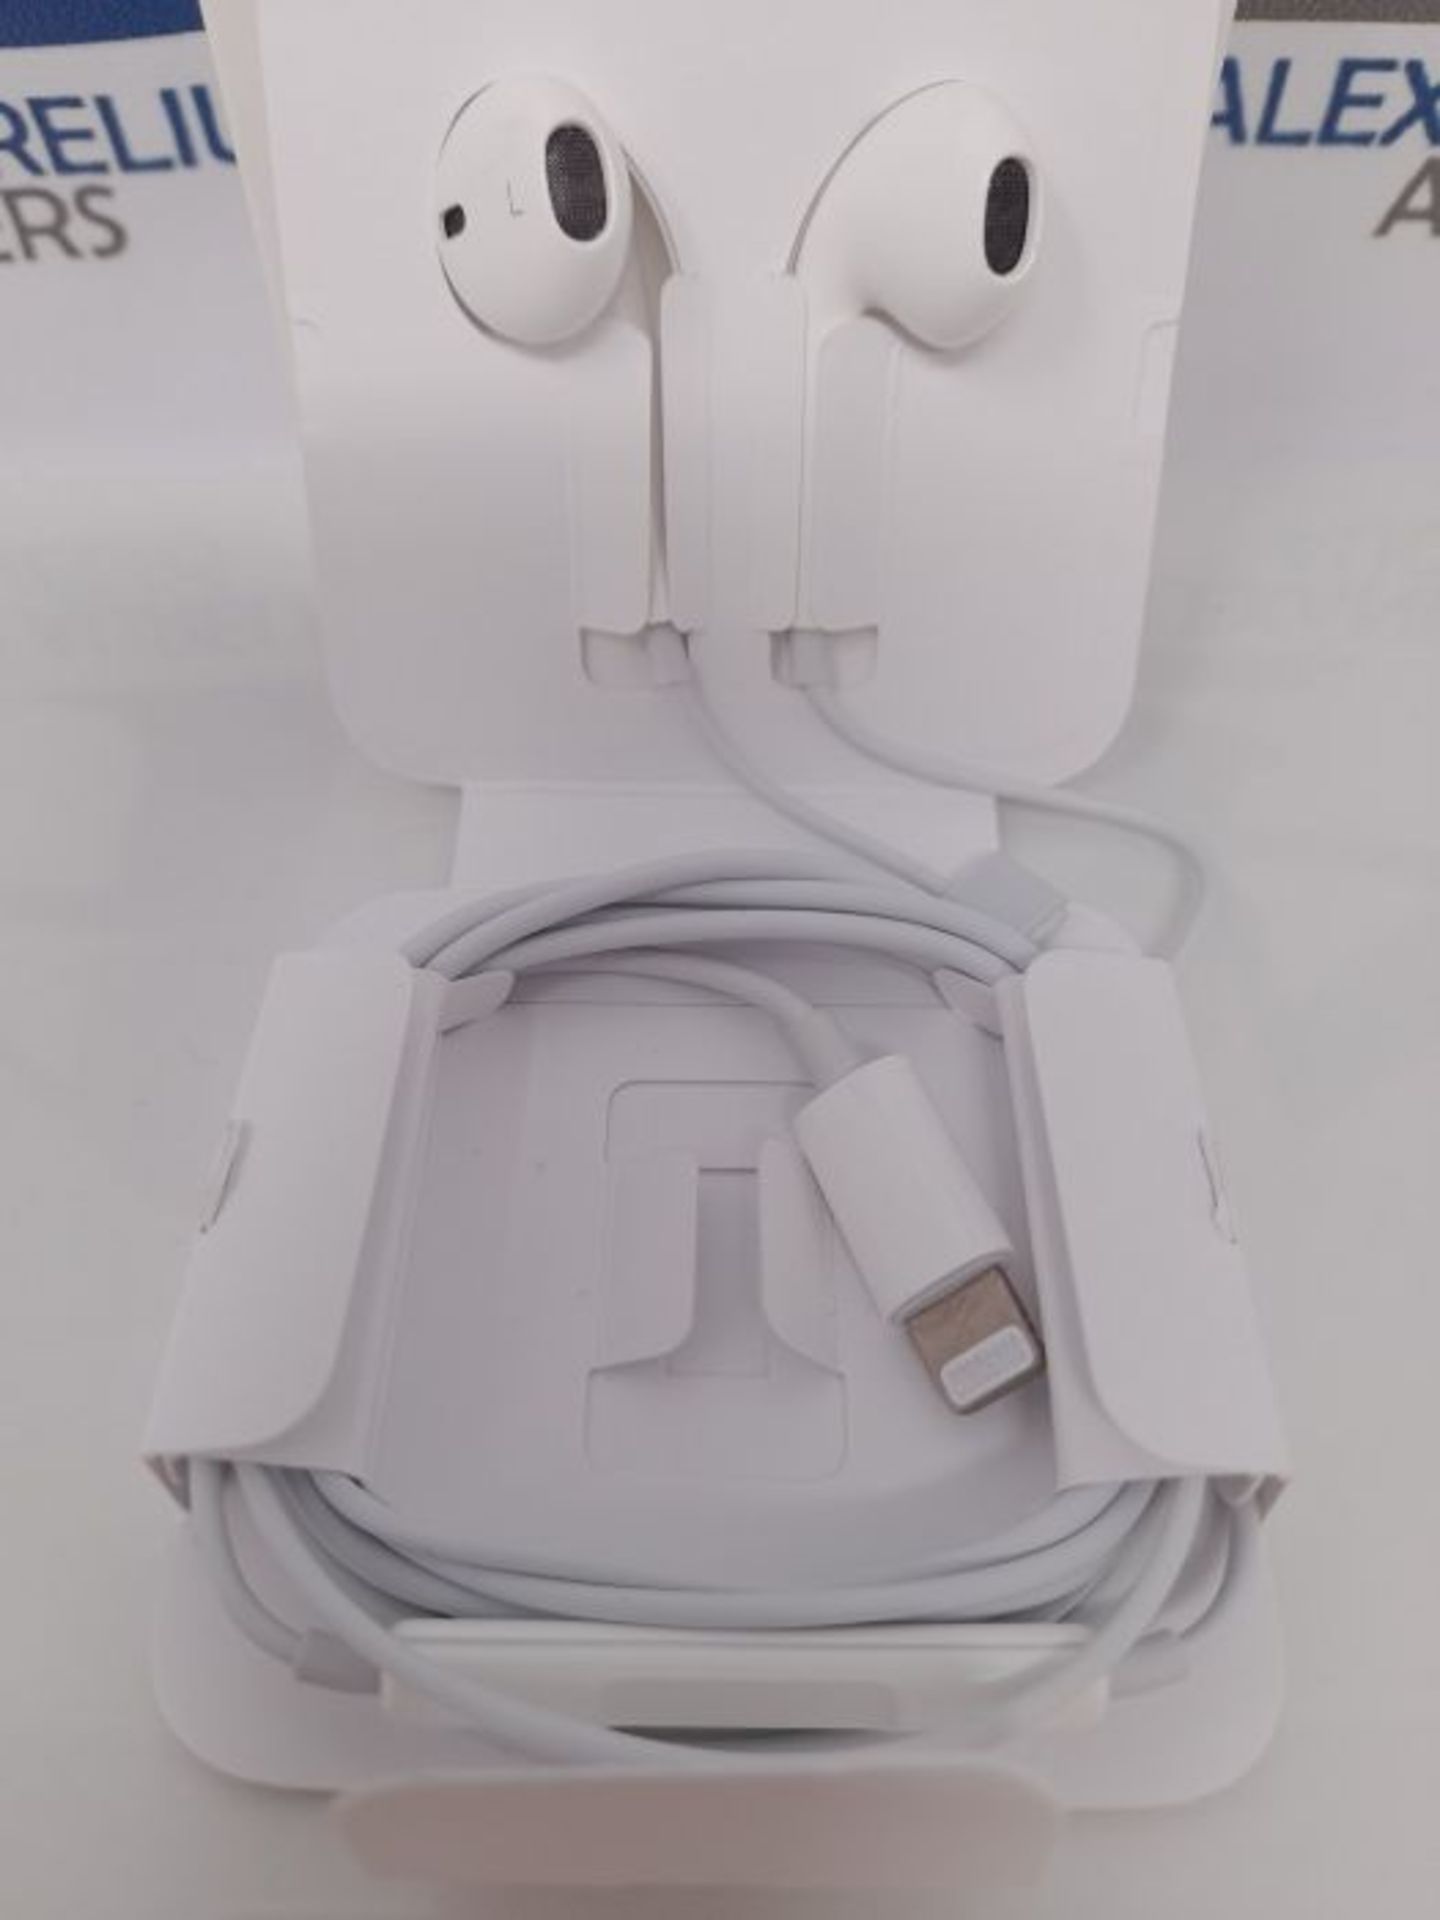 A�p�p�l�e� �E�a�r�P�o�d�s� �a�v�e�c� �c�o�n�n�e�c�t�e�u�r� �L�i�g�h�t�n�i�n�g� - Image 3 of 3